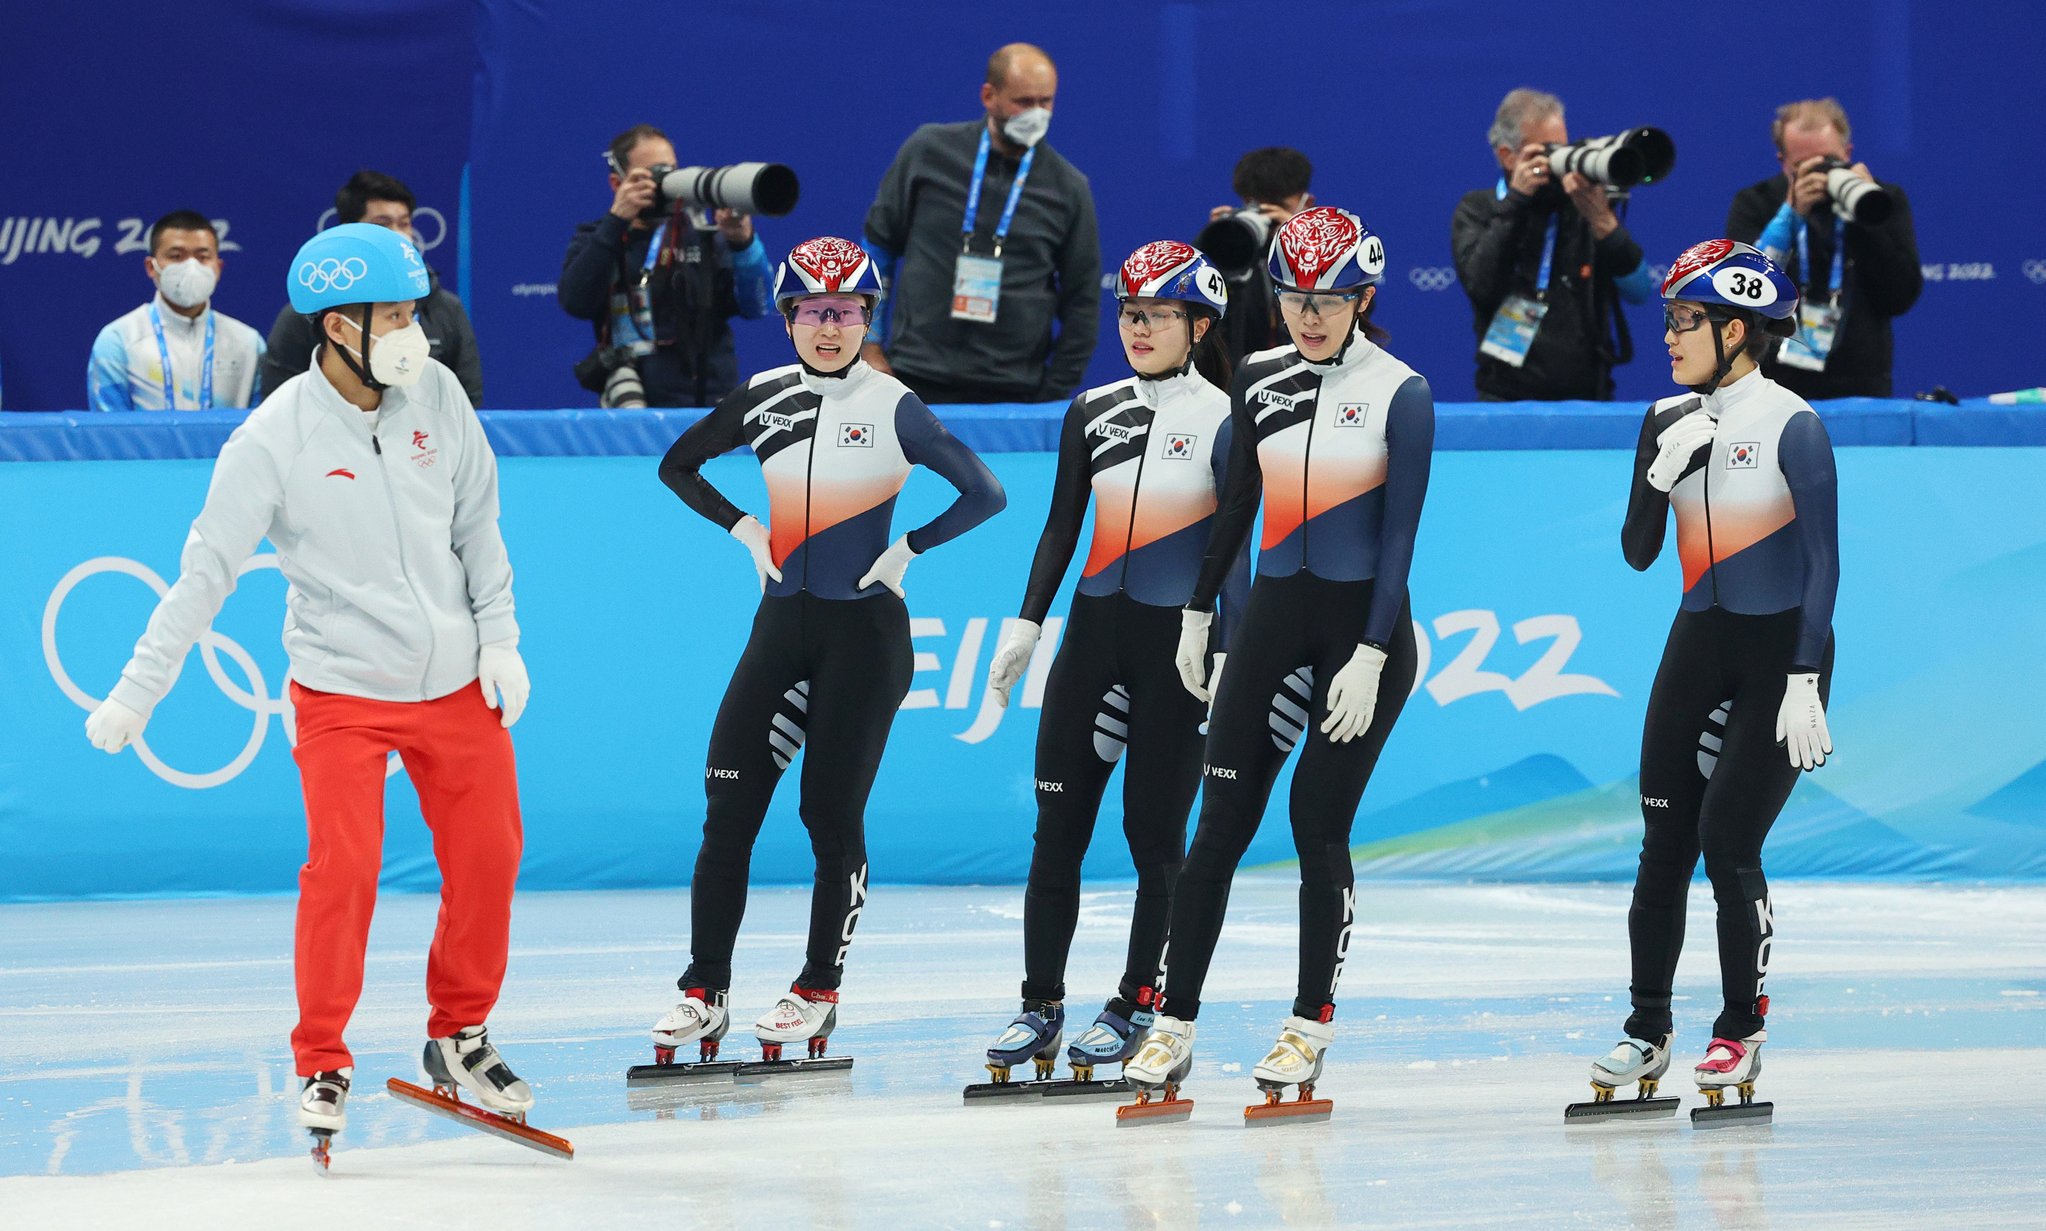 한국 여자쇼트트랙 대표팀 선수들이 3000m 계주 결승행에 성공한 뒤 기뻐하고 있다. [연합뉴스]